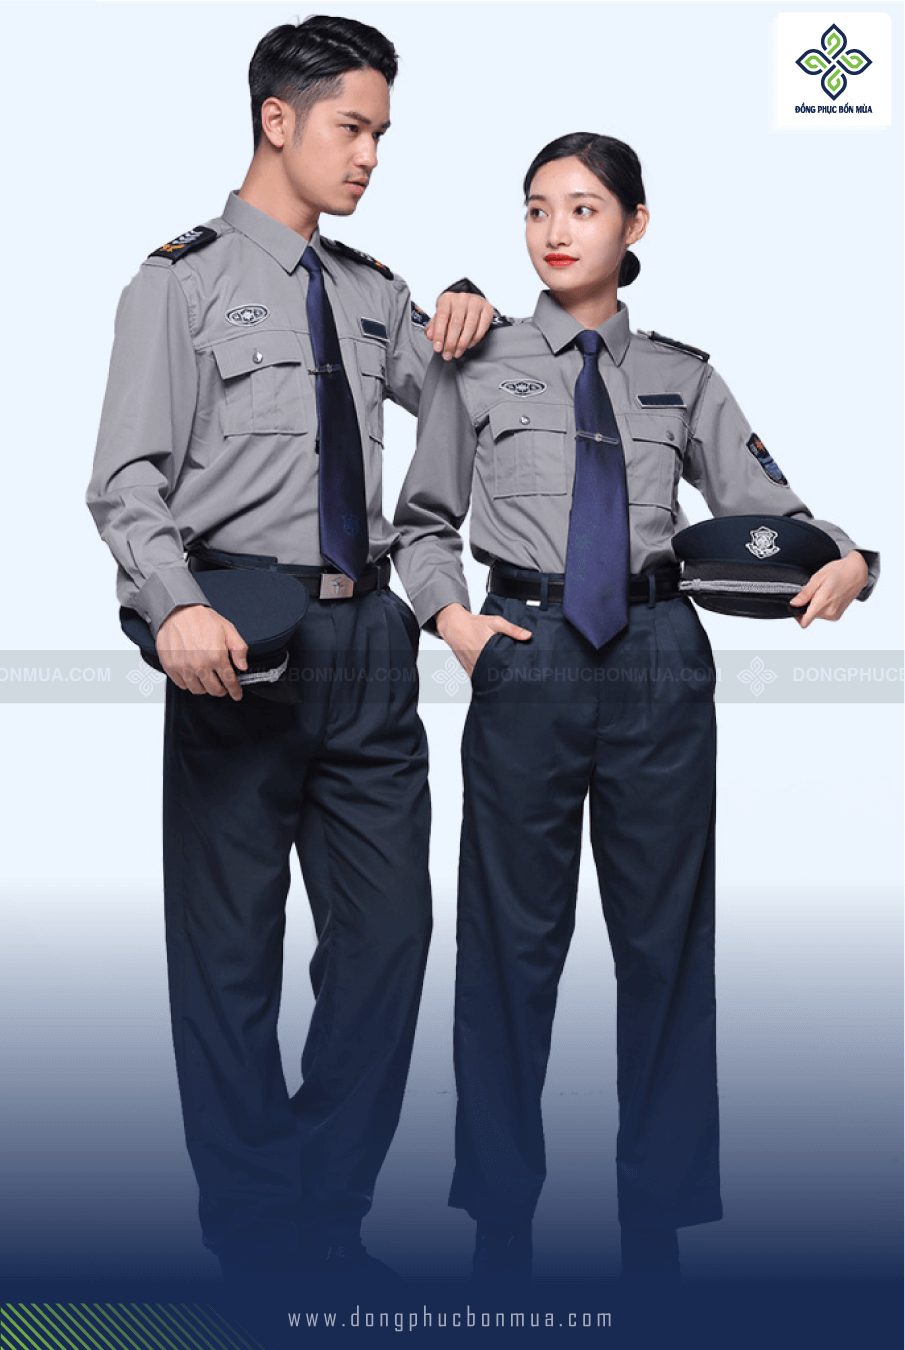 đồng phục bảo vệ tại hà nội